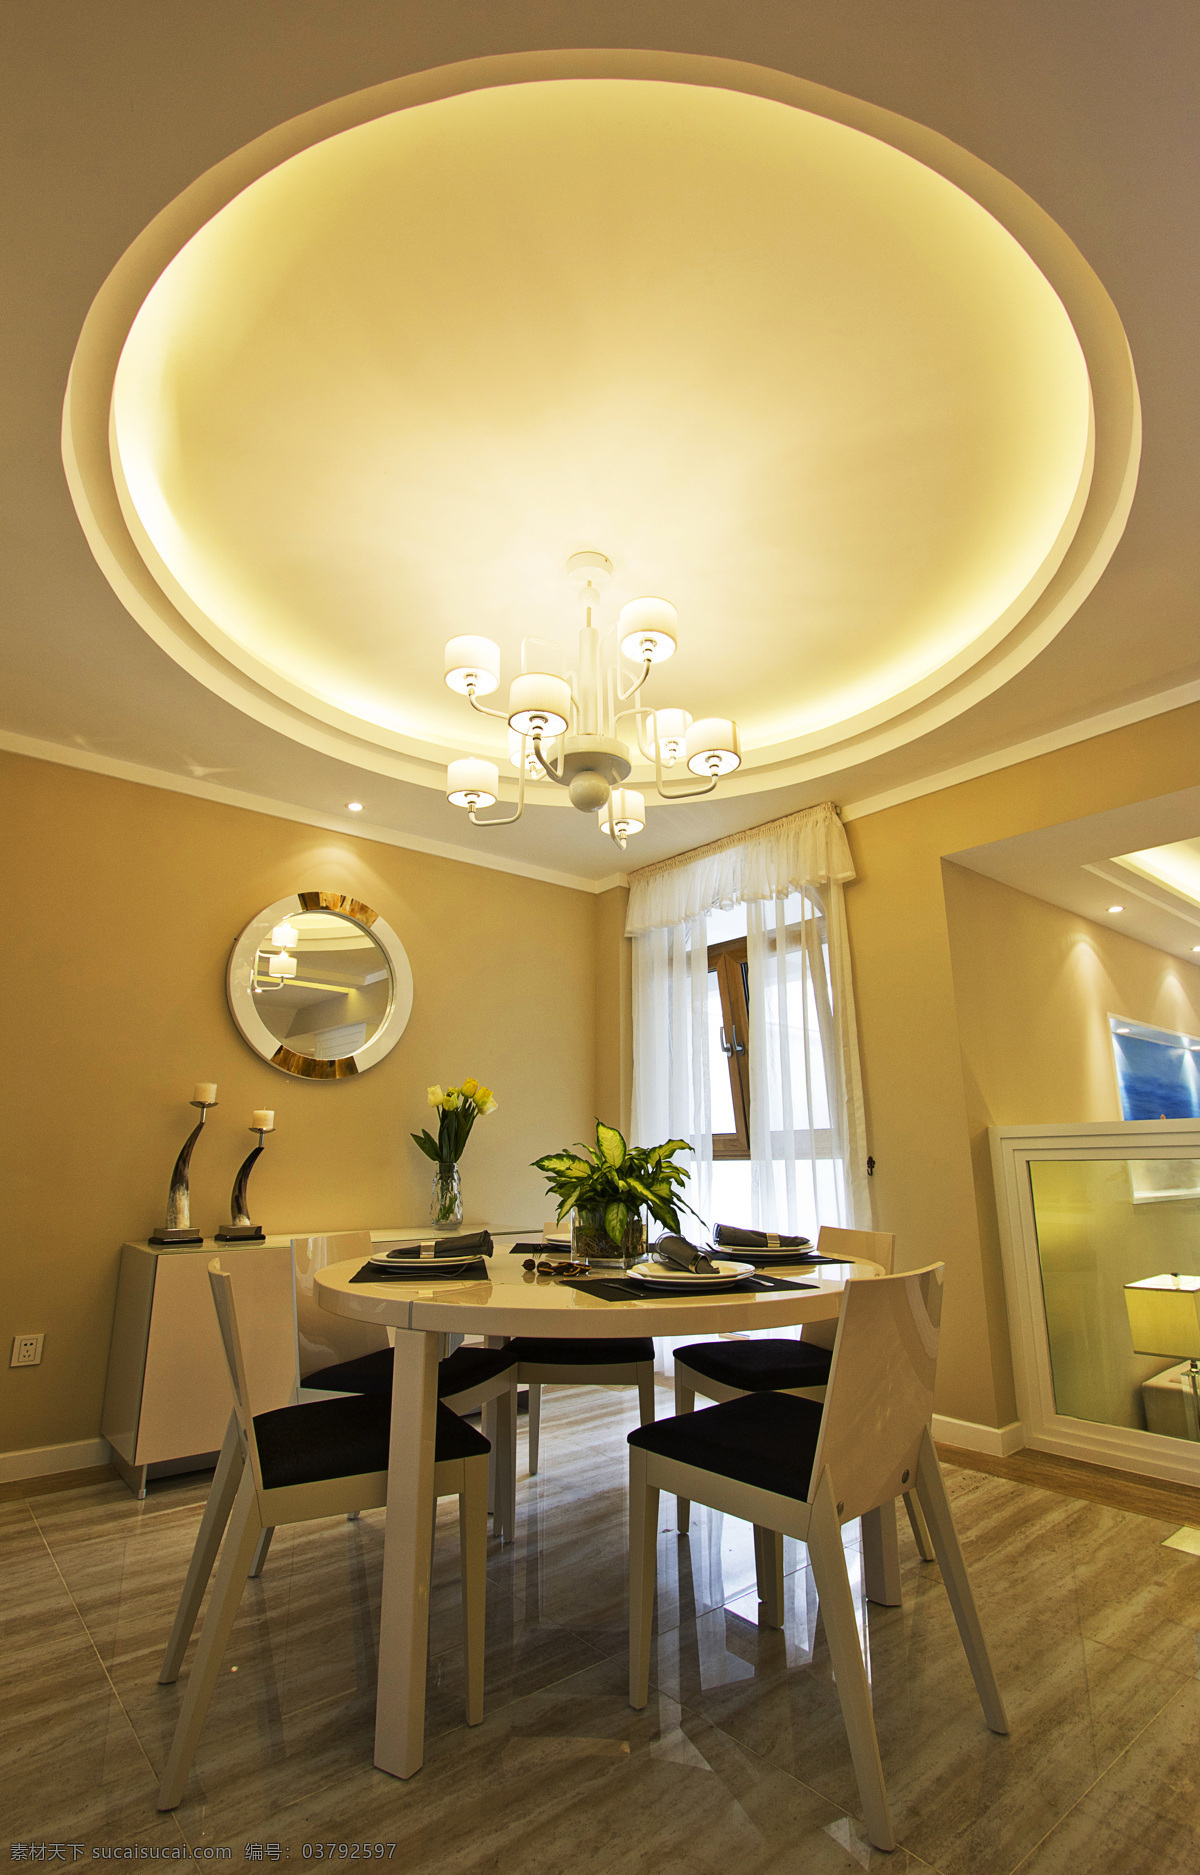 室内 餐厅 圆形 吊顶 现代 时尚 装修 效果图 黄色灯光 条纹陶瓷地板 清新园艺 创意圆形吊顶